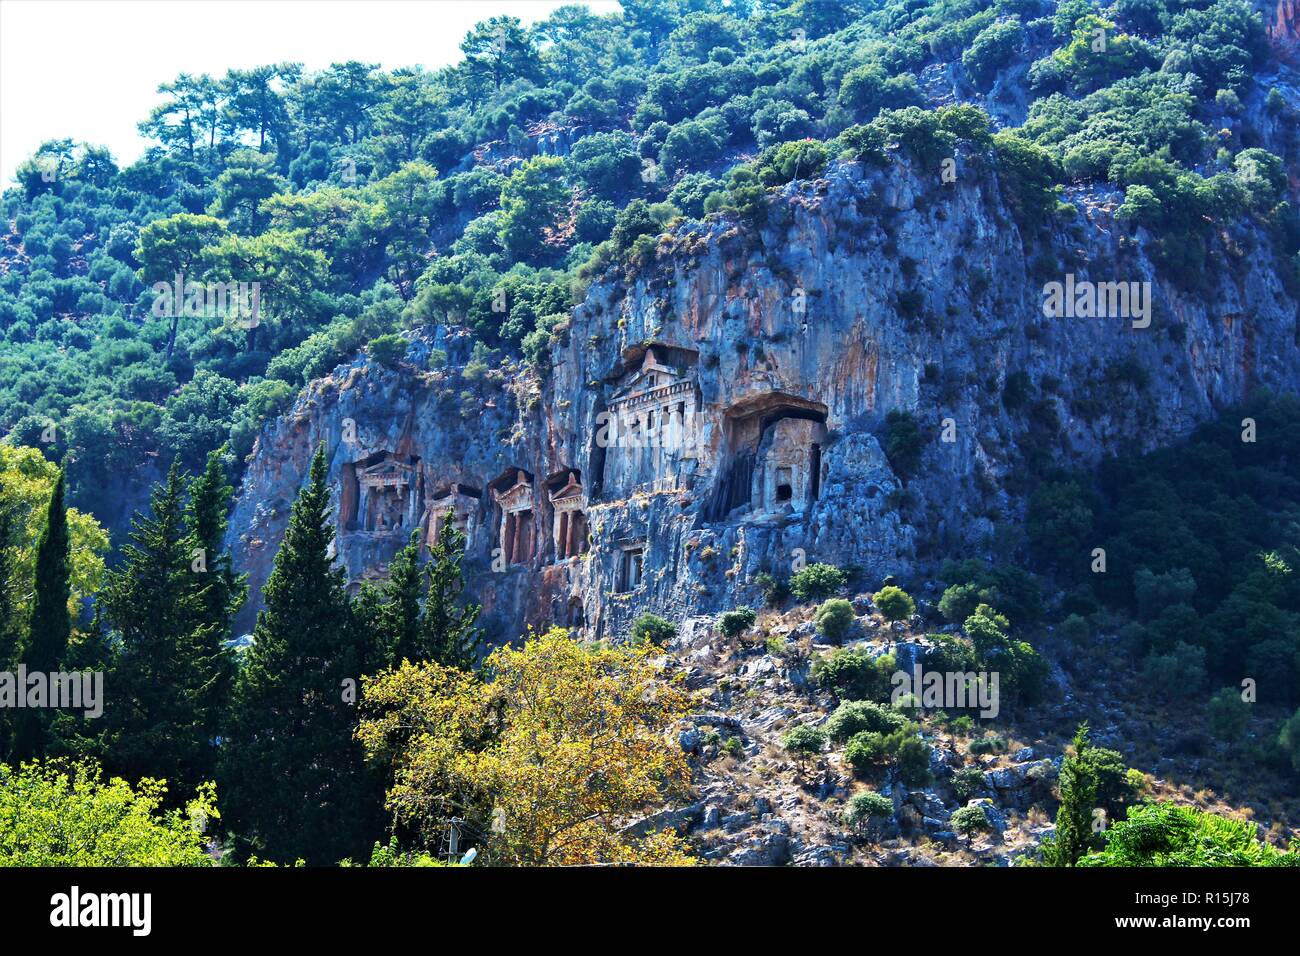 The Lycian/Kaunian rock Tombs, at Dalyan, Turkey Stock Photo